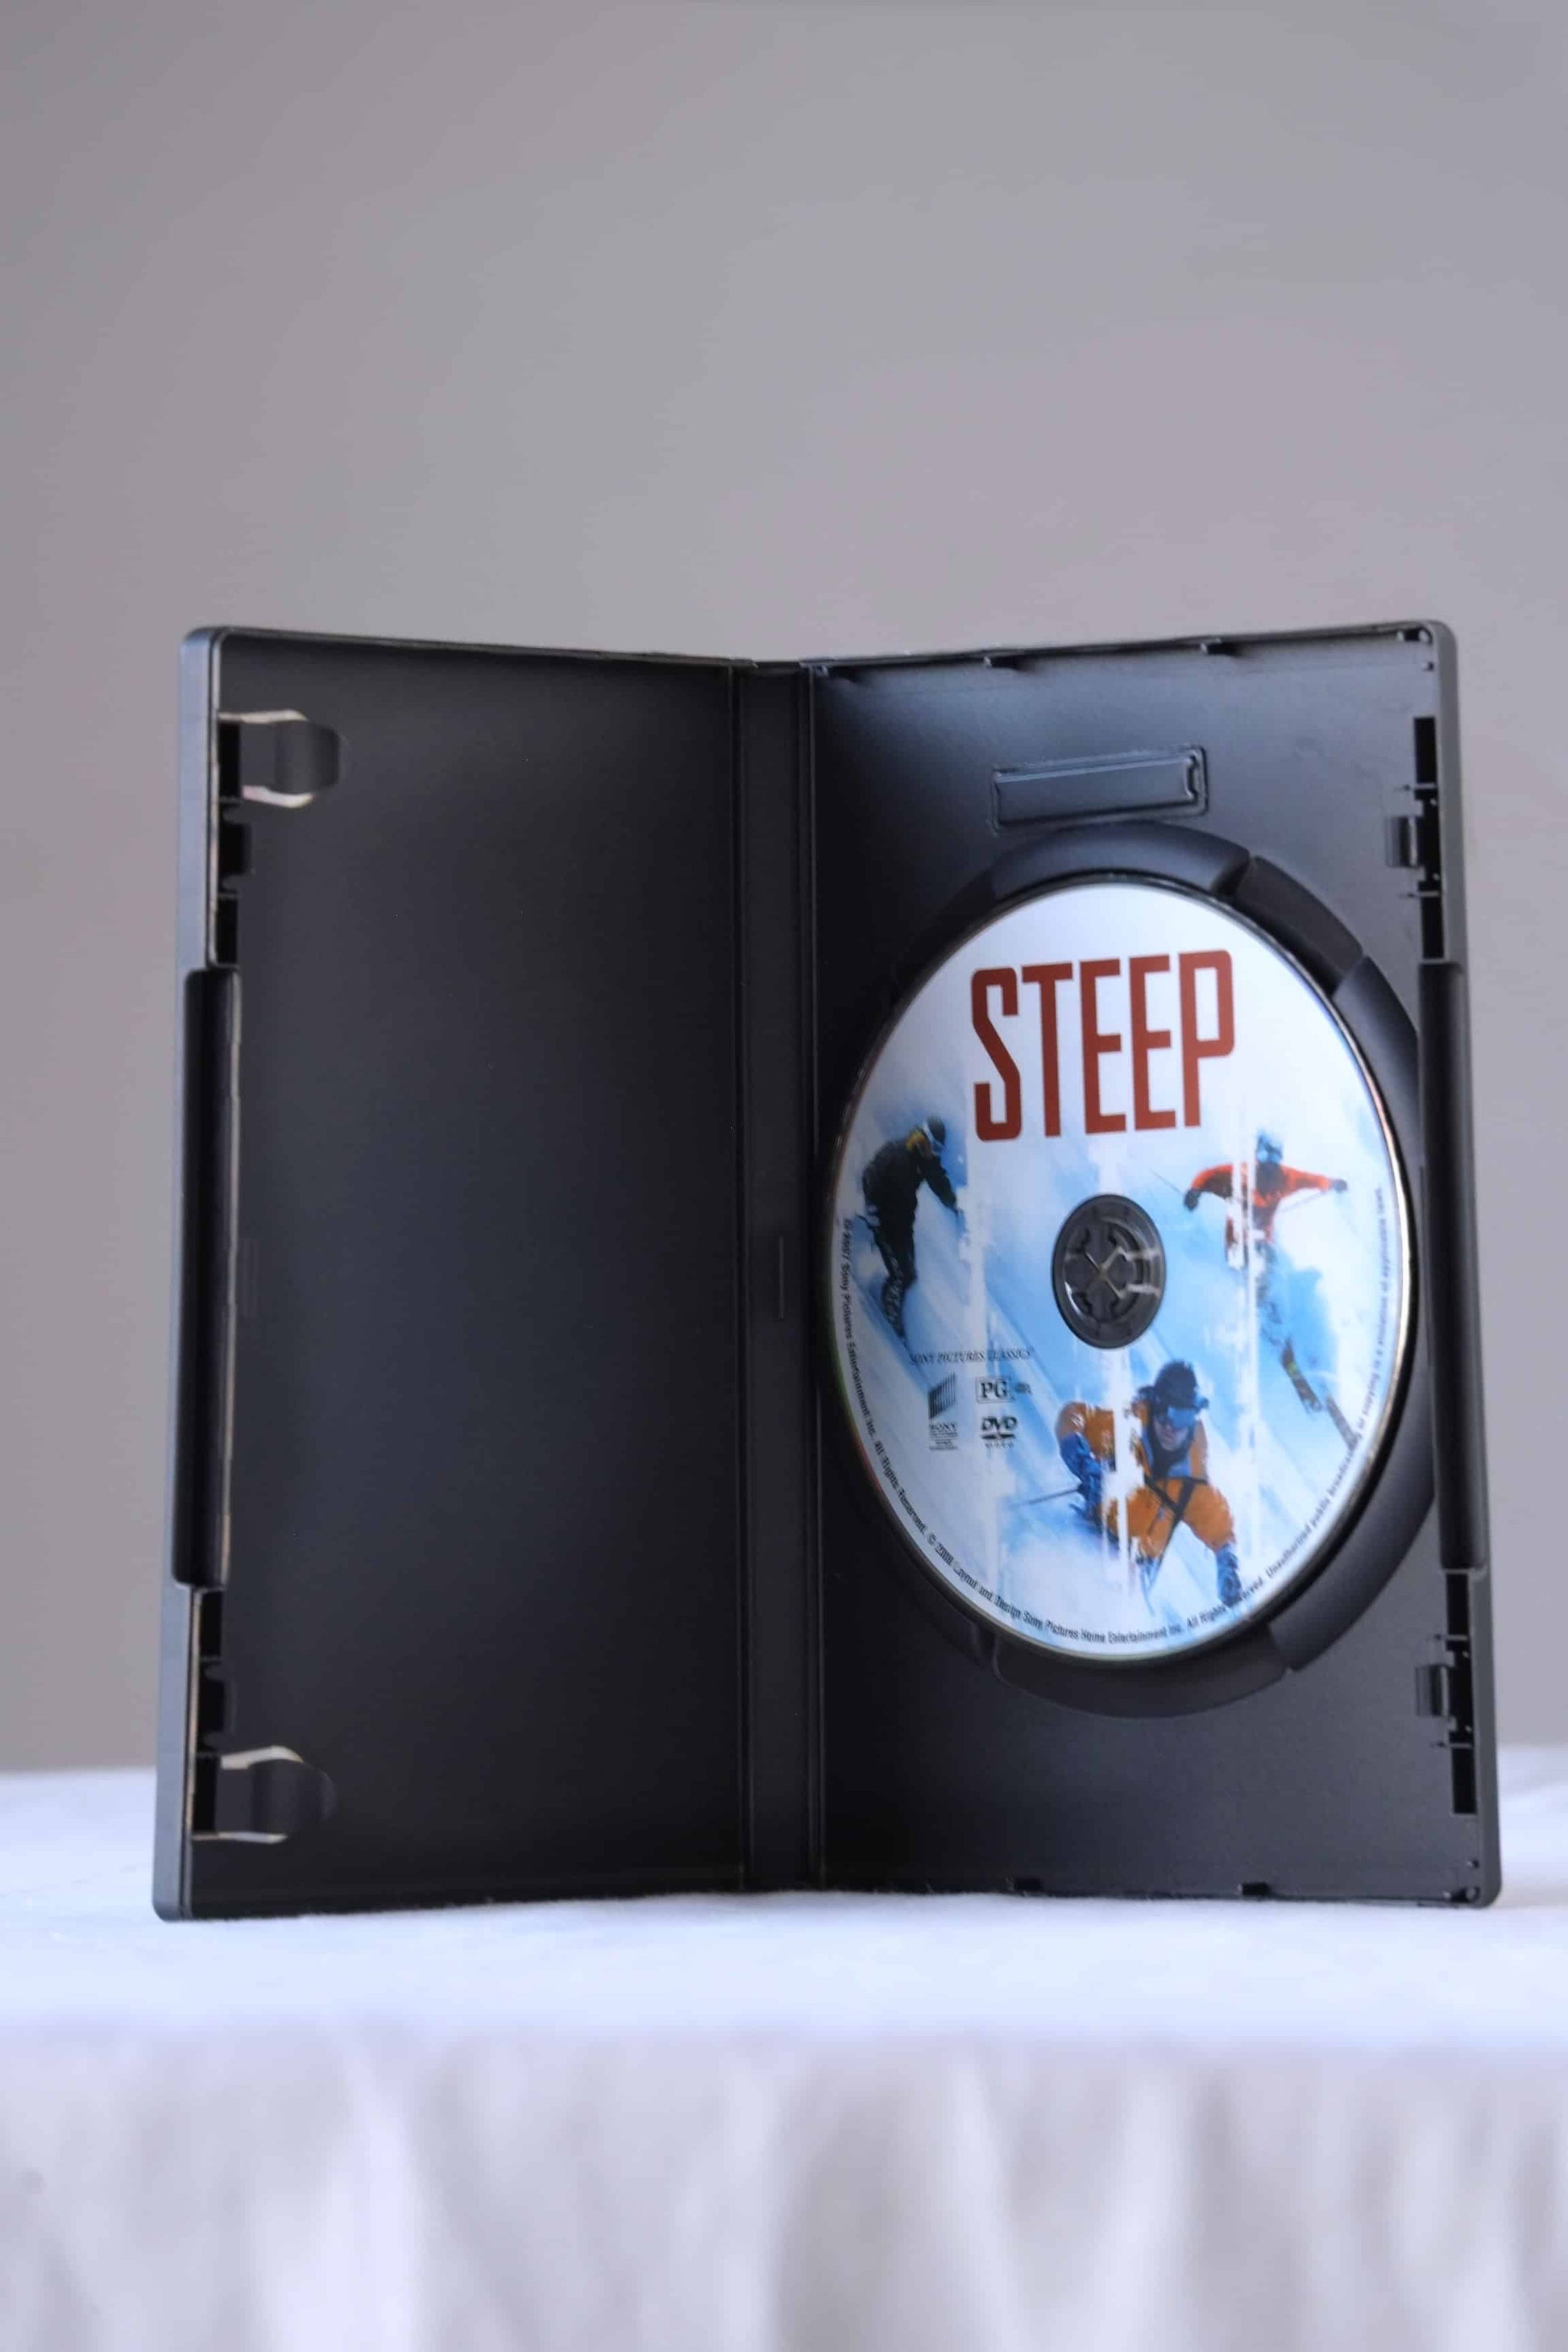 STEEP DVD by Mark Obenhaus open case